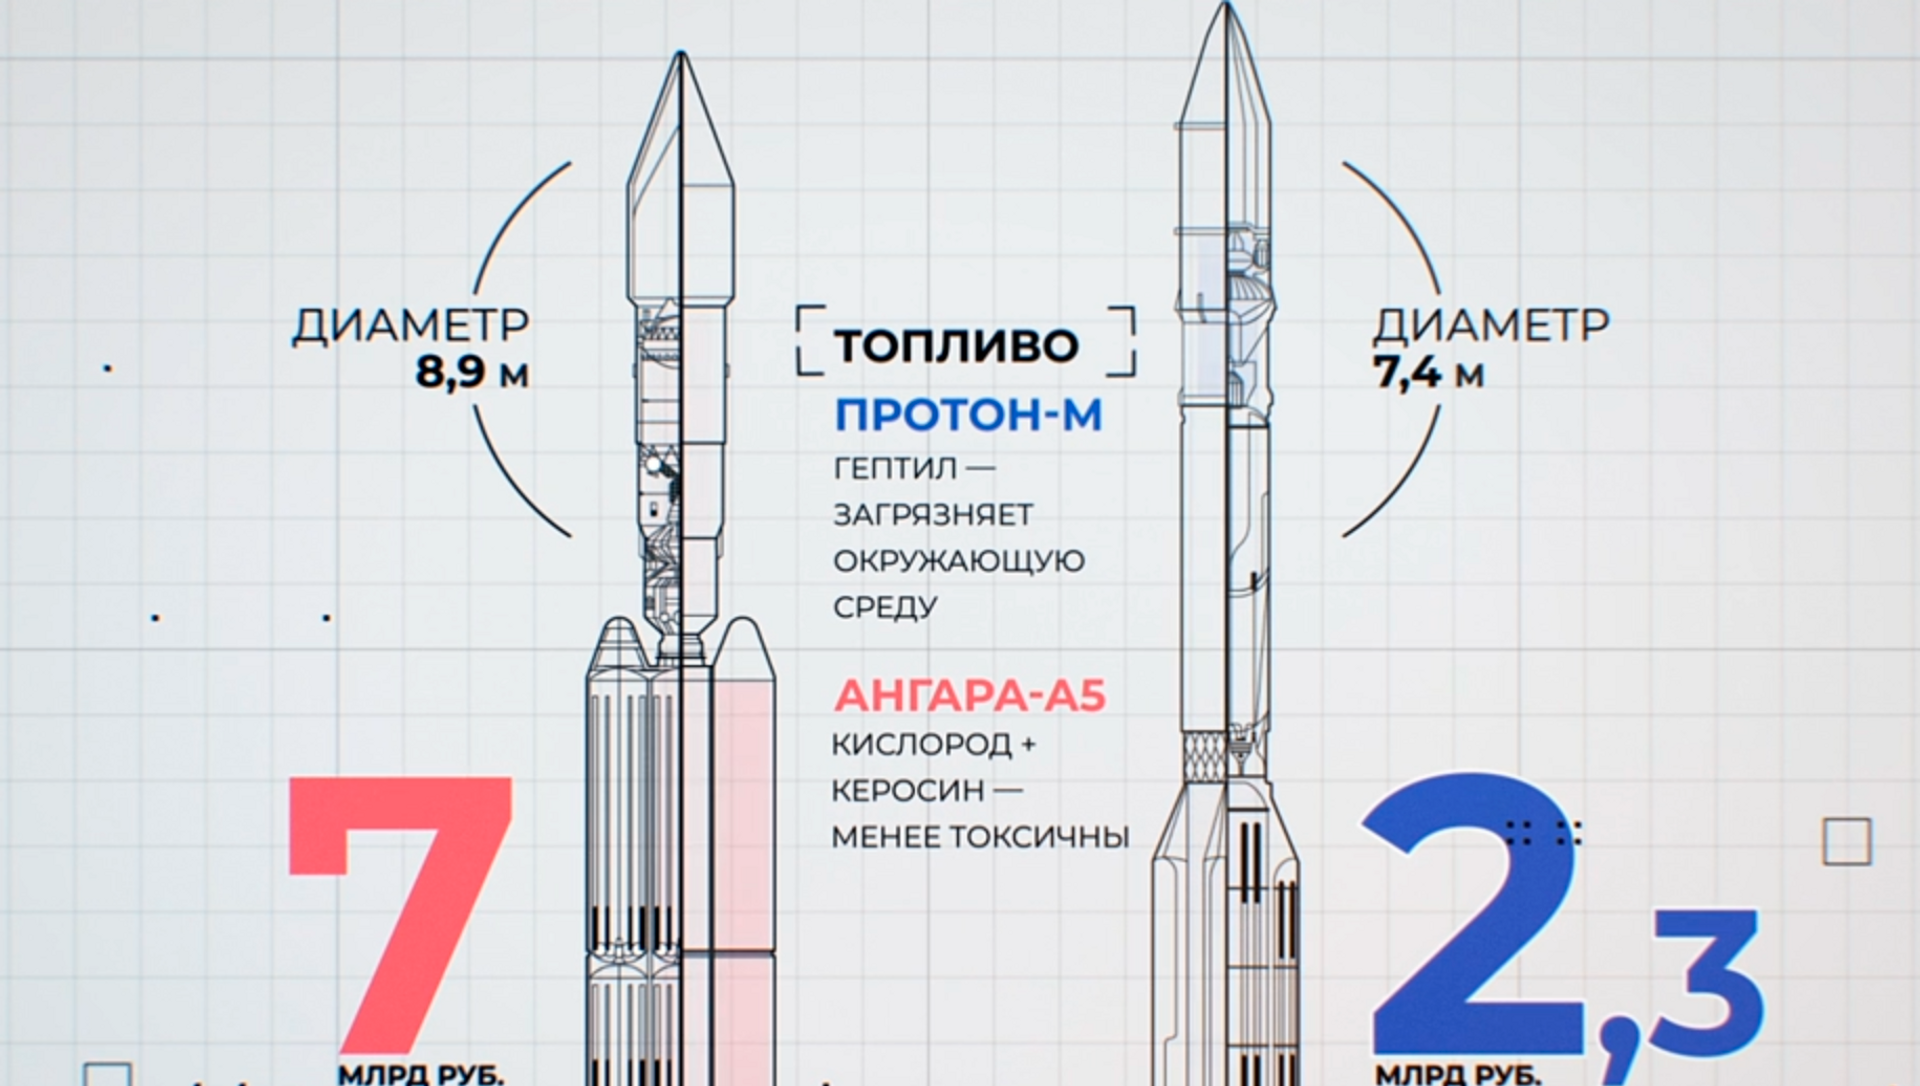 Ракета-носитель "Ангара-а5". Ракета носитель Ангара а5 чертеж. Ангара-1.2 ракета-носитель схема. Ангара 1.1 ракета-носитель. Ракета ангара а5 характеристики технические